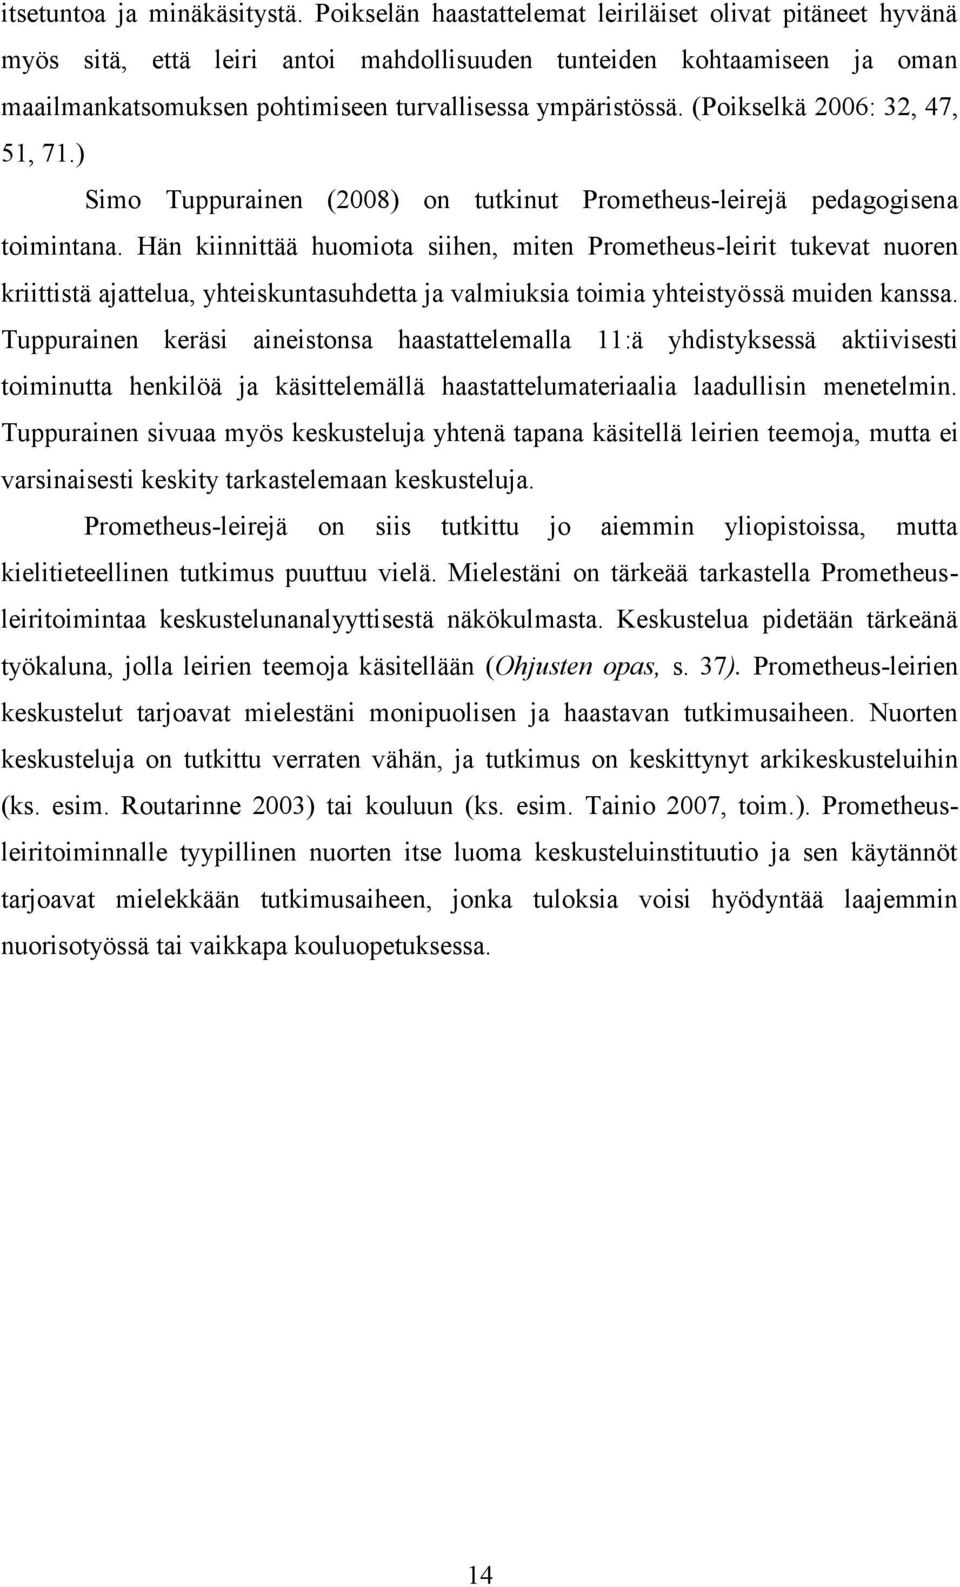 (Poikselkä 2006: 32, 47, 51, 71.) Simo Tuppurainen (2008) on tutkinut Prometheus-leirejä pedagogisena toimintana.